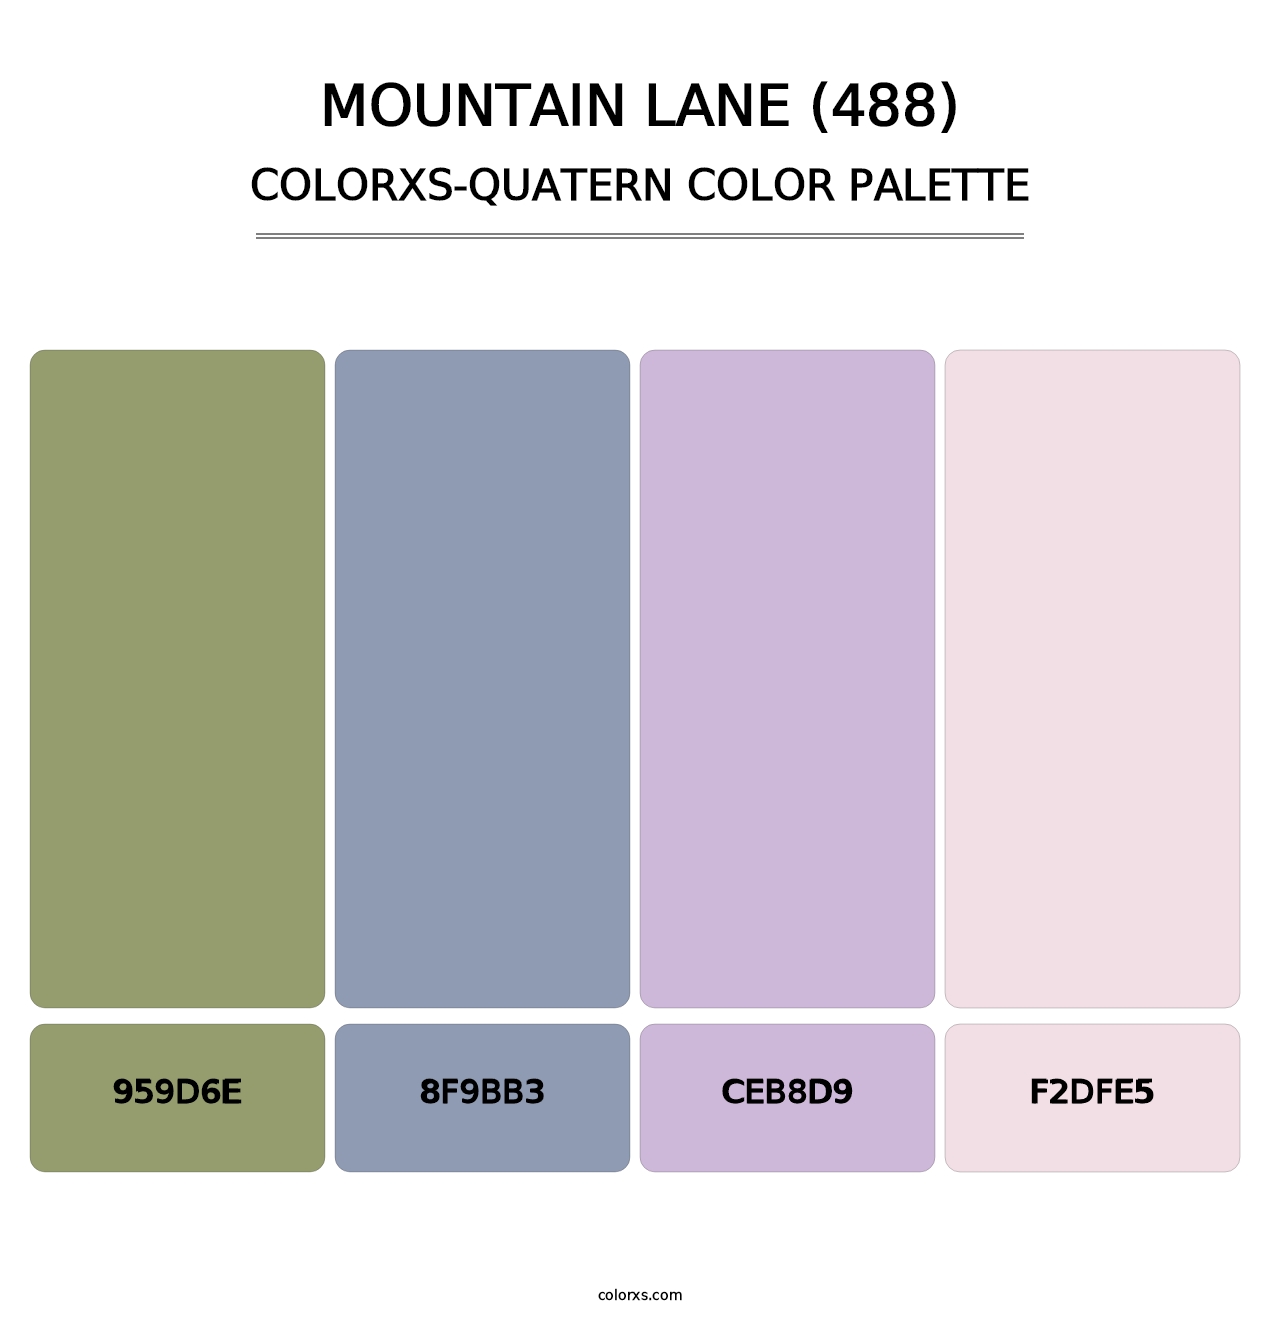 Mountain Lane (488) - Colorxs Quatern Palette